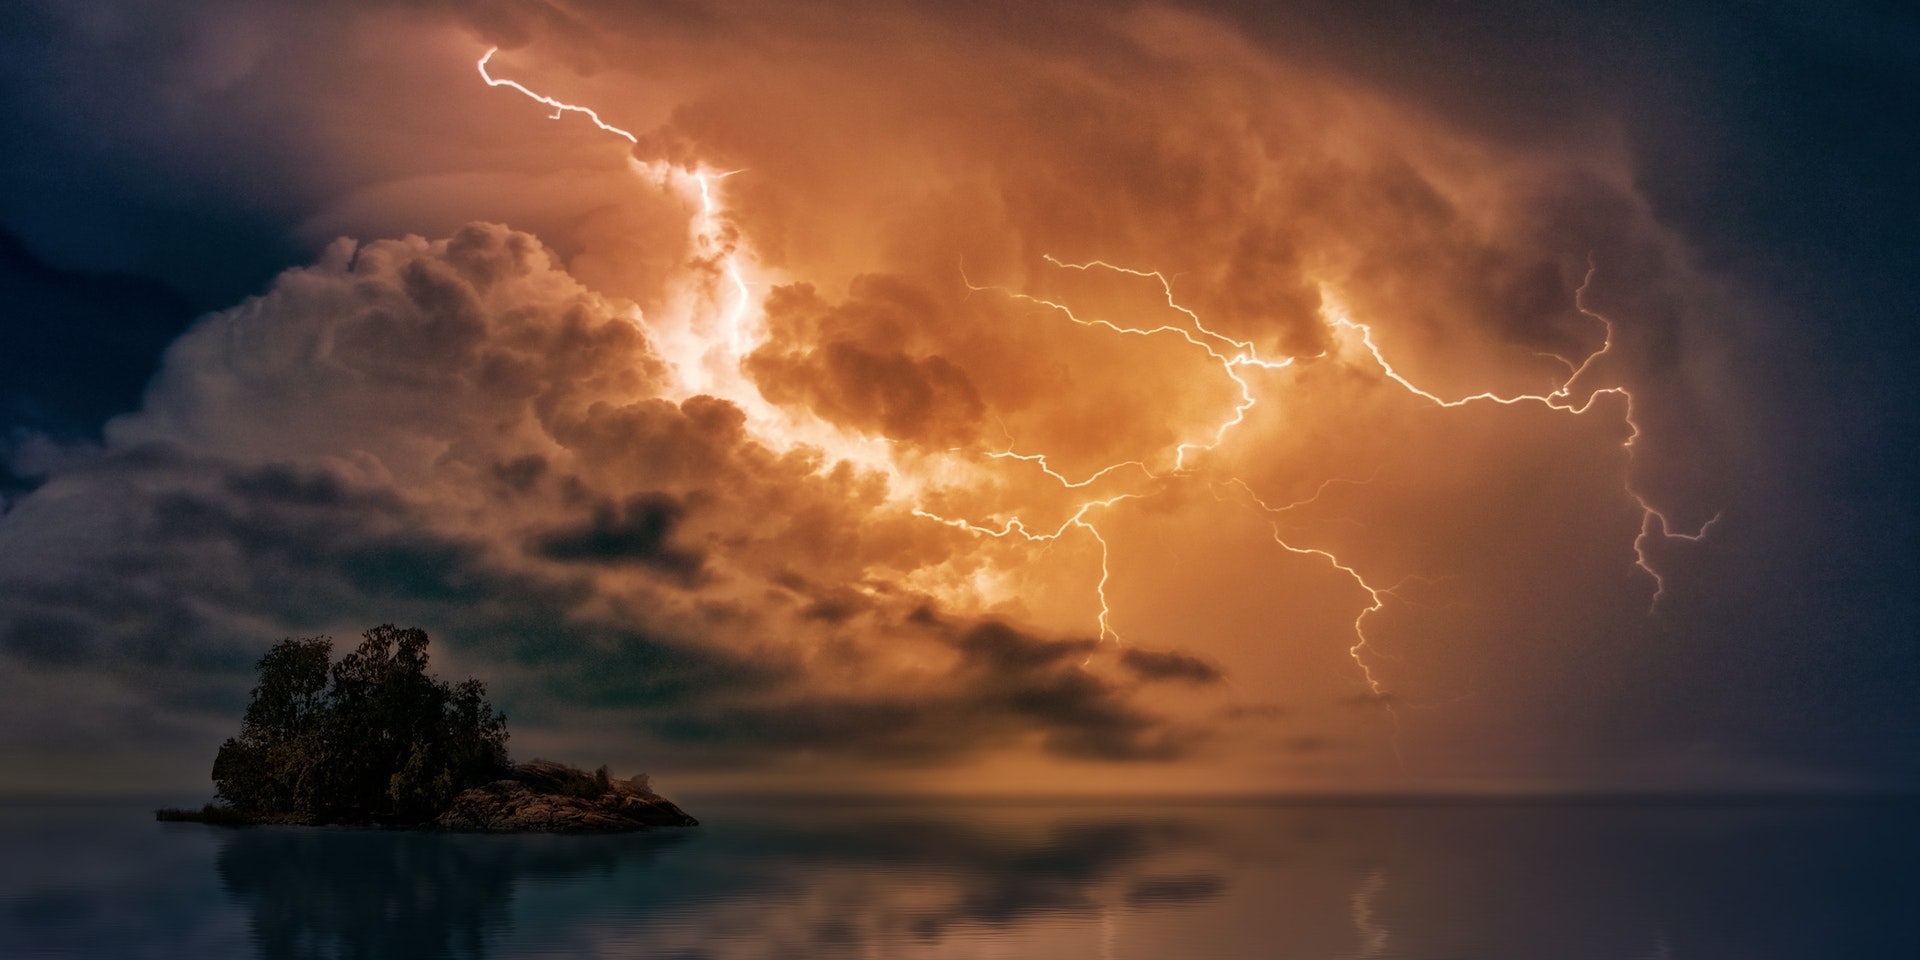 Thunder and lightning - Met Office